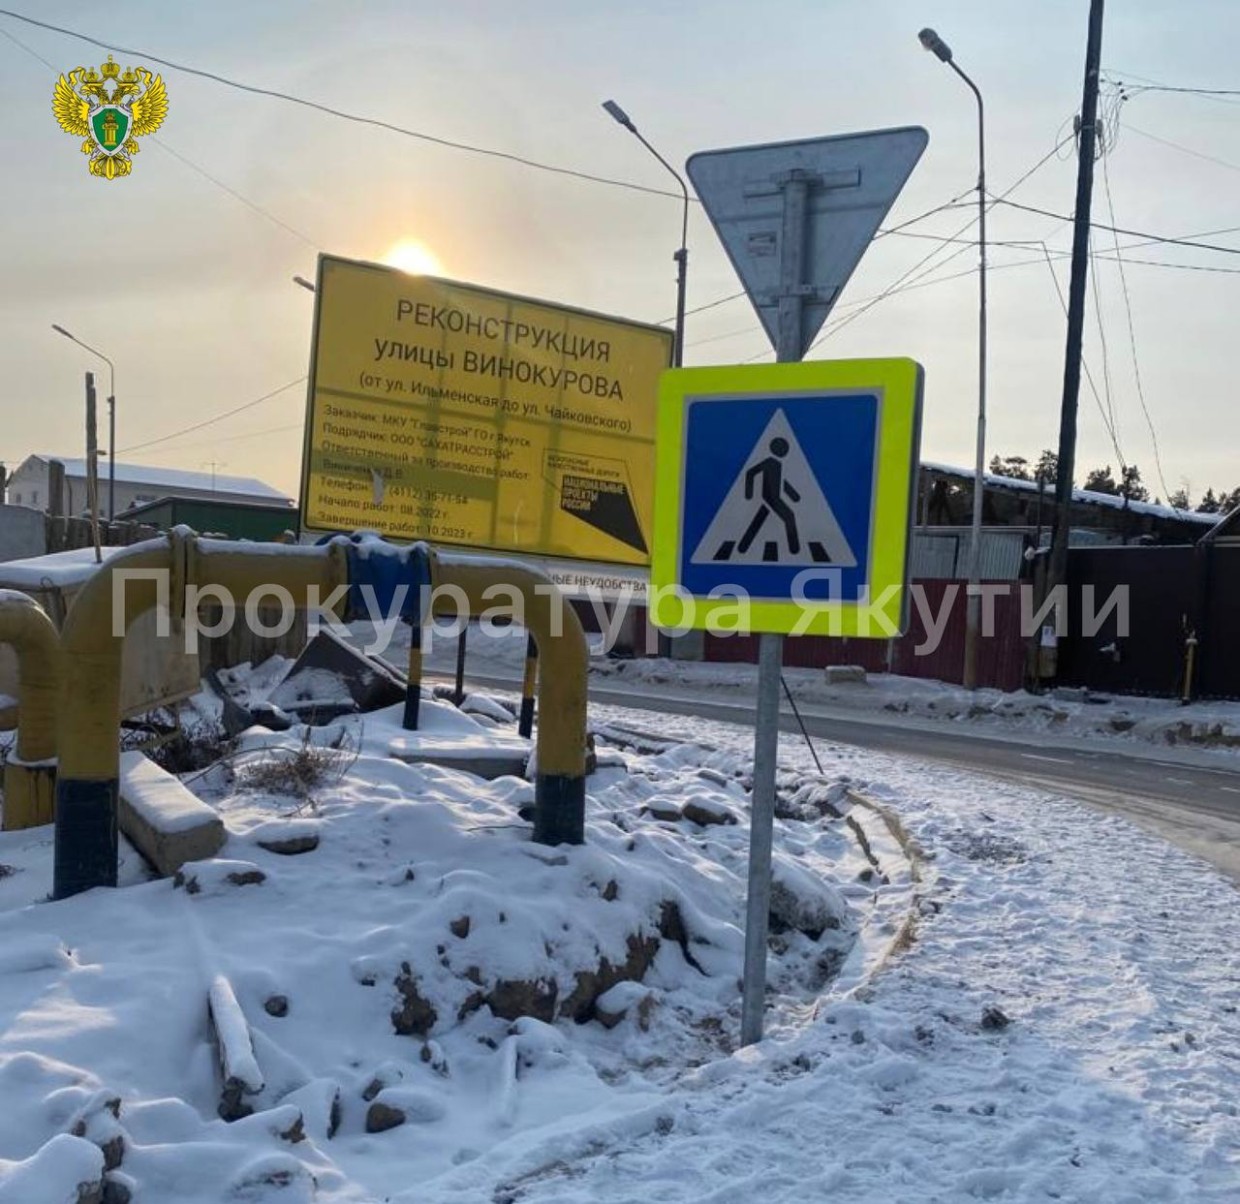 В Якутске руководитель подрядчика оштрафован на 1,8 млн рублей за неисполнение в срок работ по реконструкции ул. Винокурова